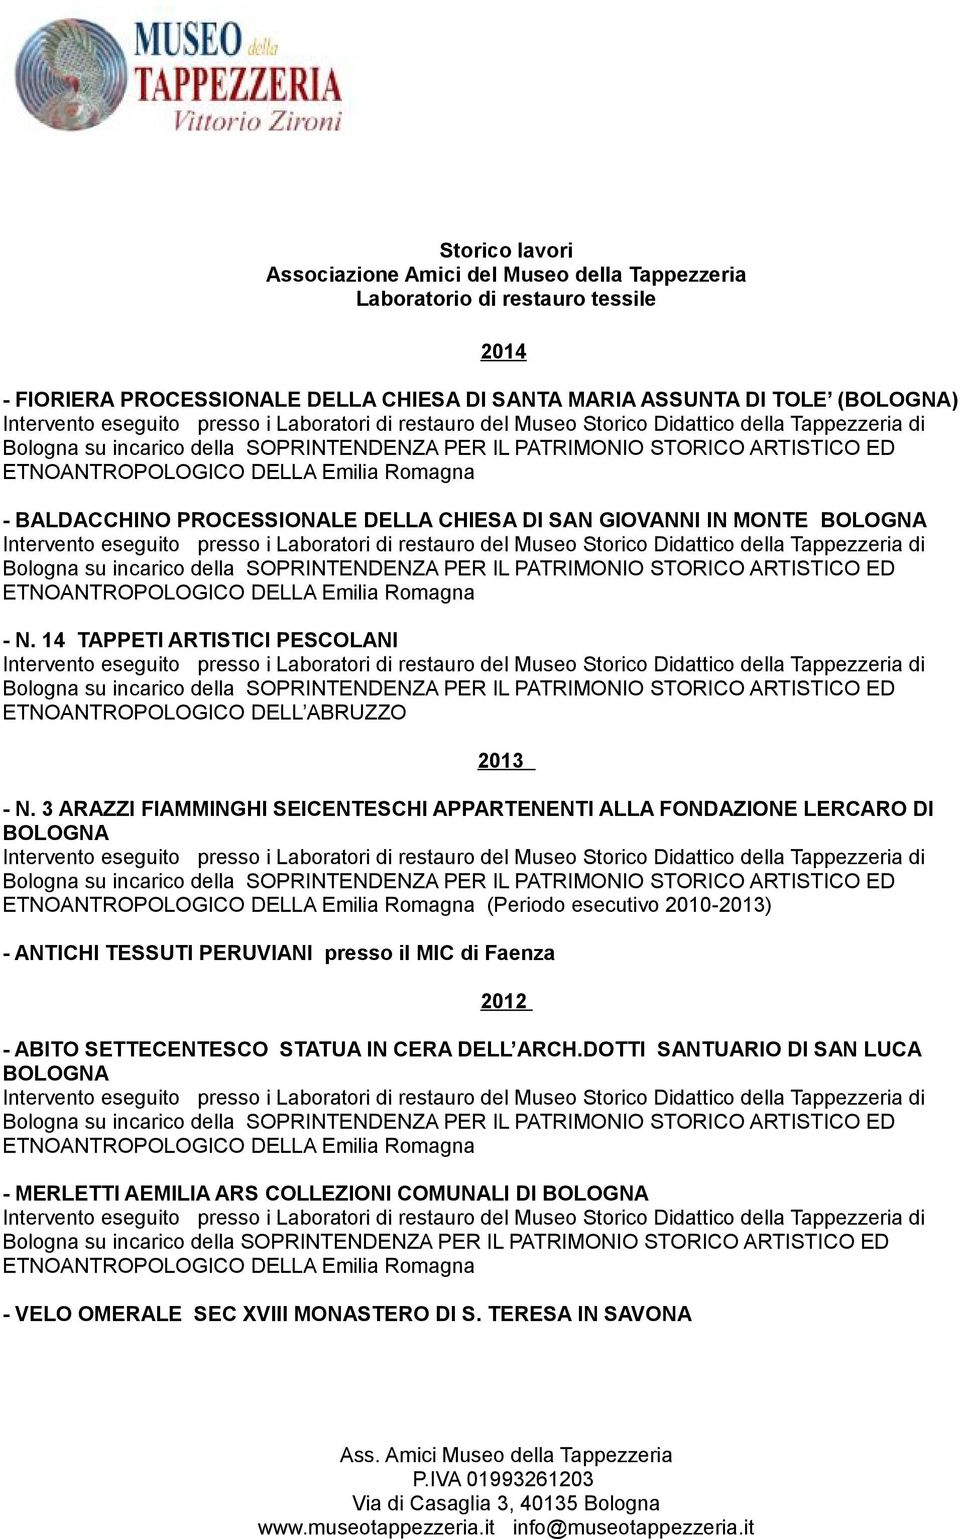 3 ARAZZI FIAMMINGHI SEICENTESCHI APPARTENENTI ALLA FONDAZIONE LERCARO DI BOLOGNA (Periodo esecutivo 2010-2013) 2014 2013 - ANTICHI TESSUTI PERUVIANI presso il MIC di Faenza